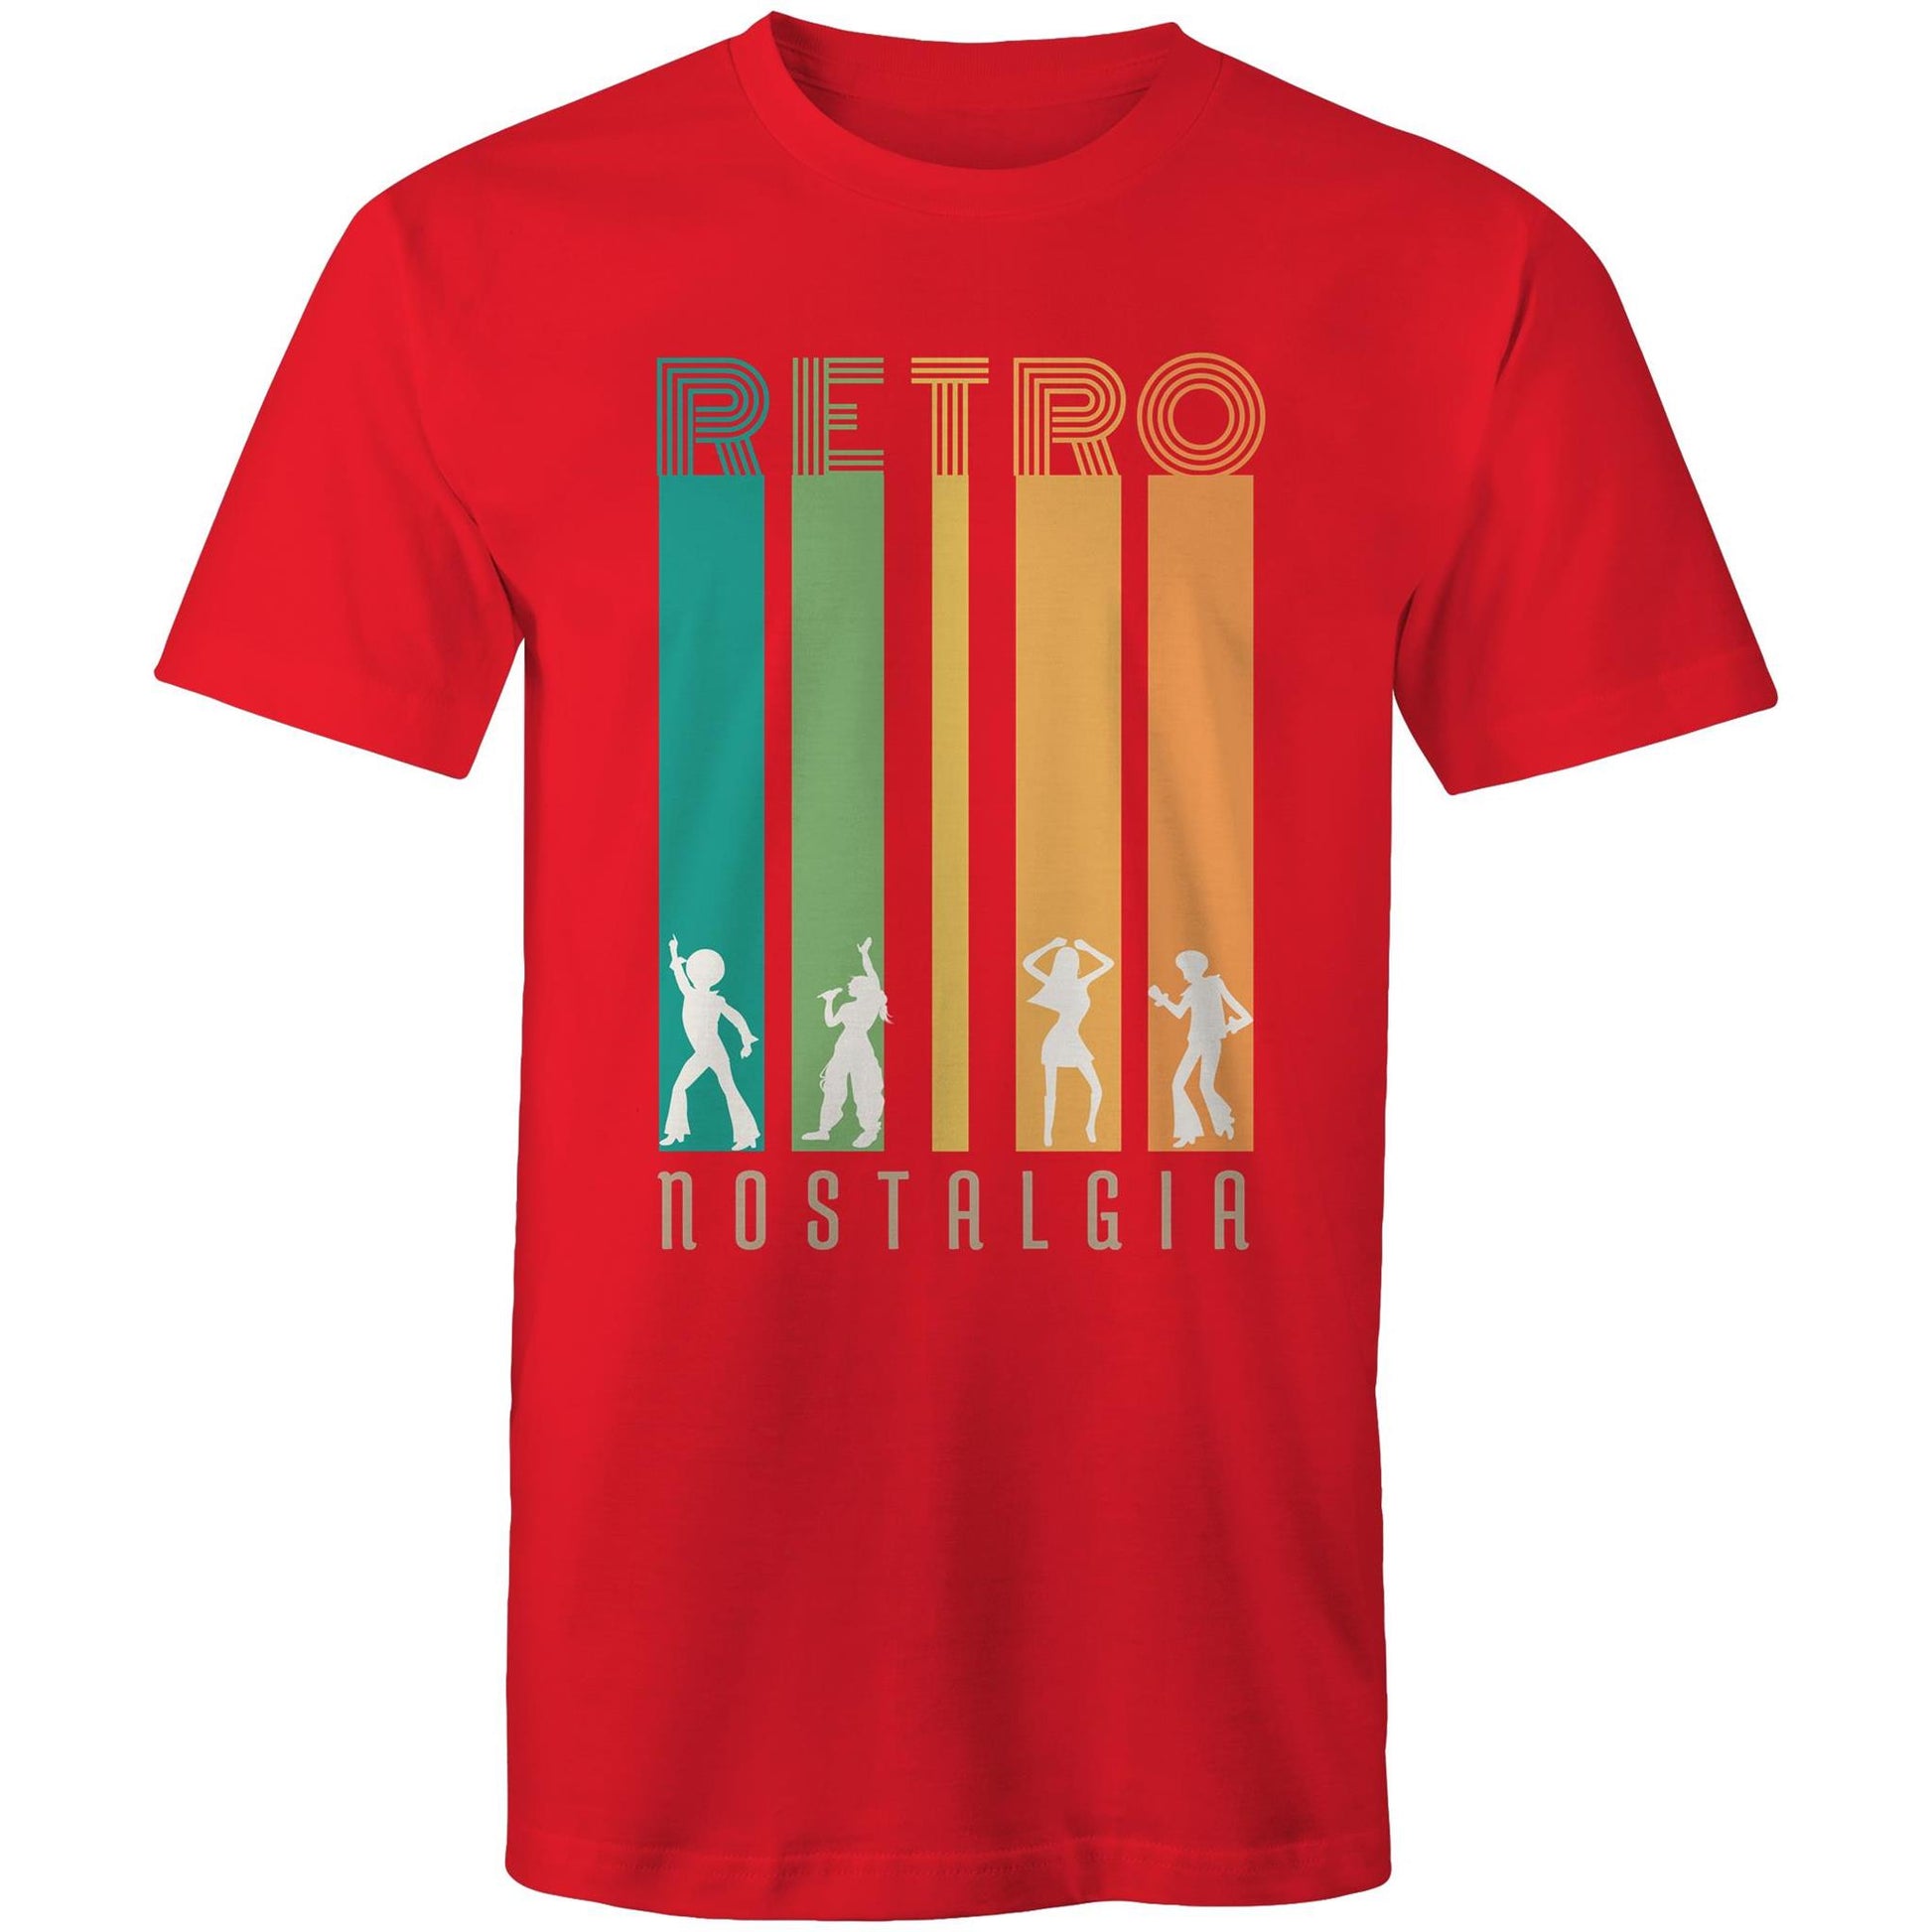 Retro Nostalgia - Mens T-Shirt Red Mens T-shirt Retro